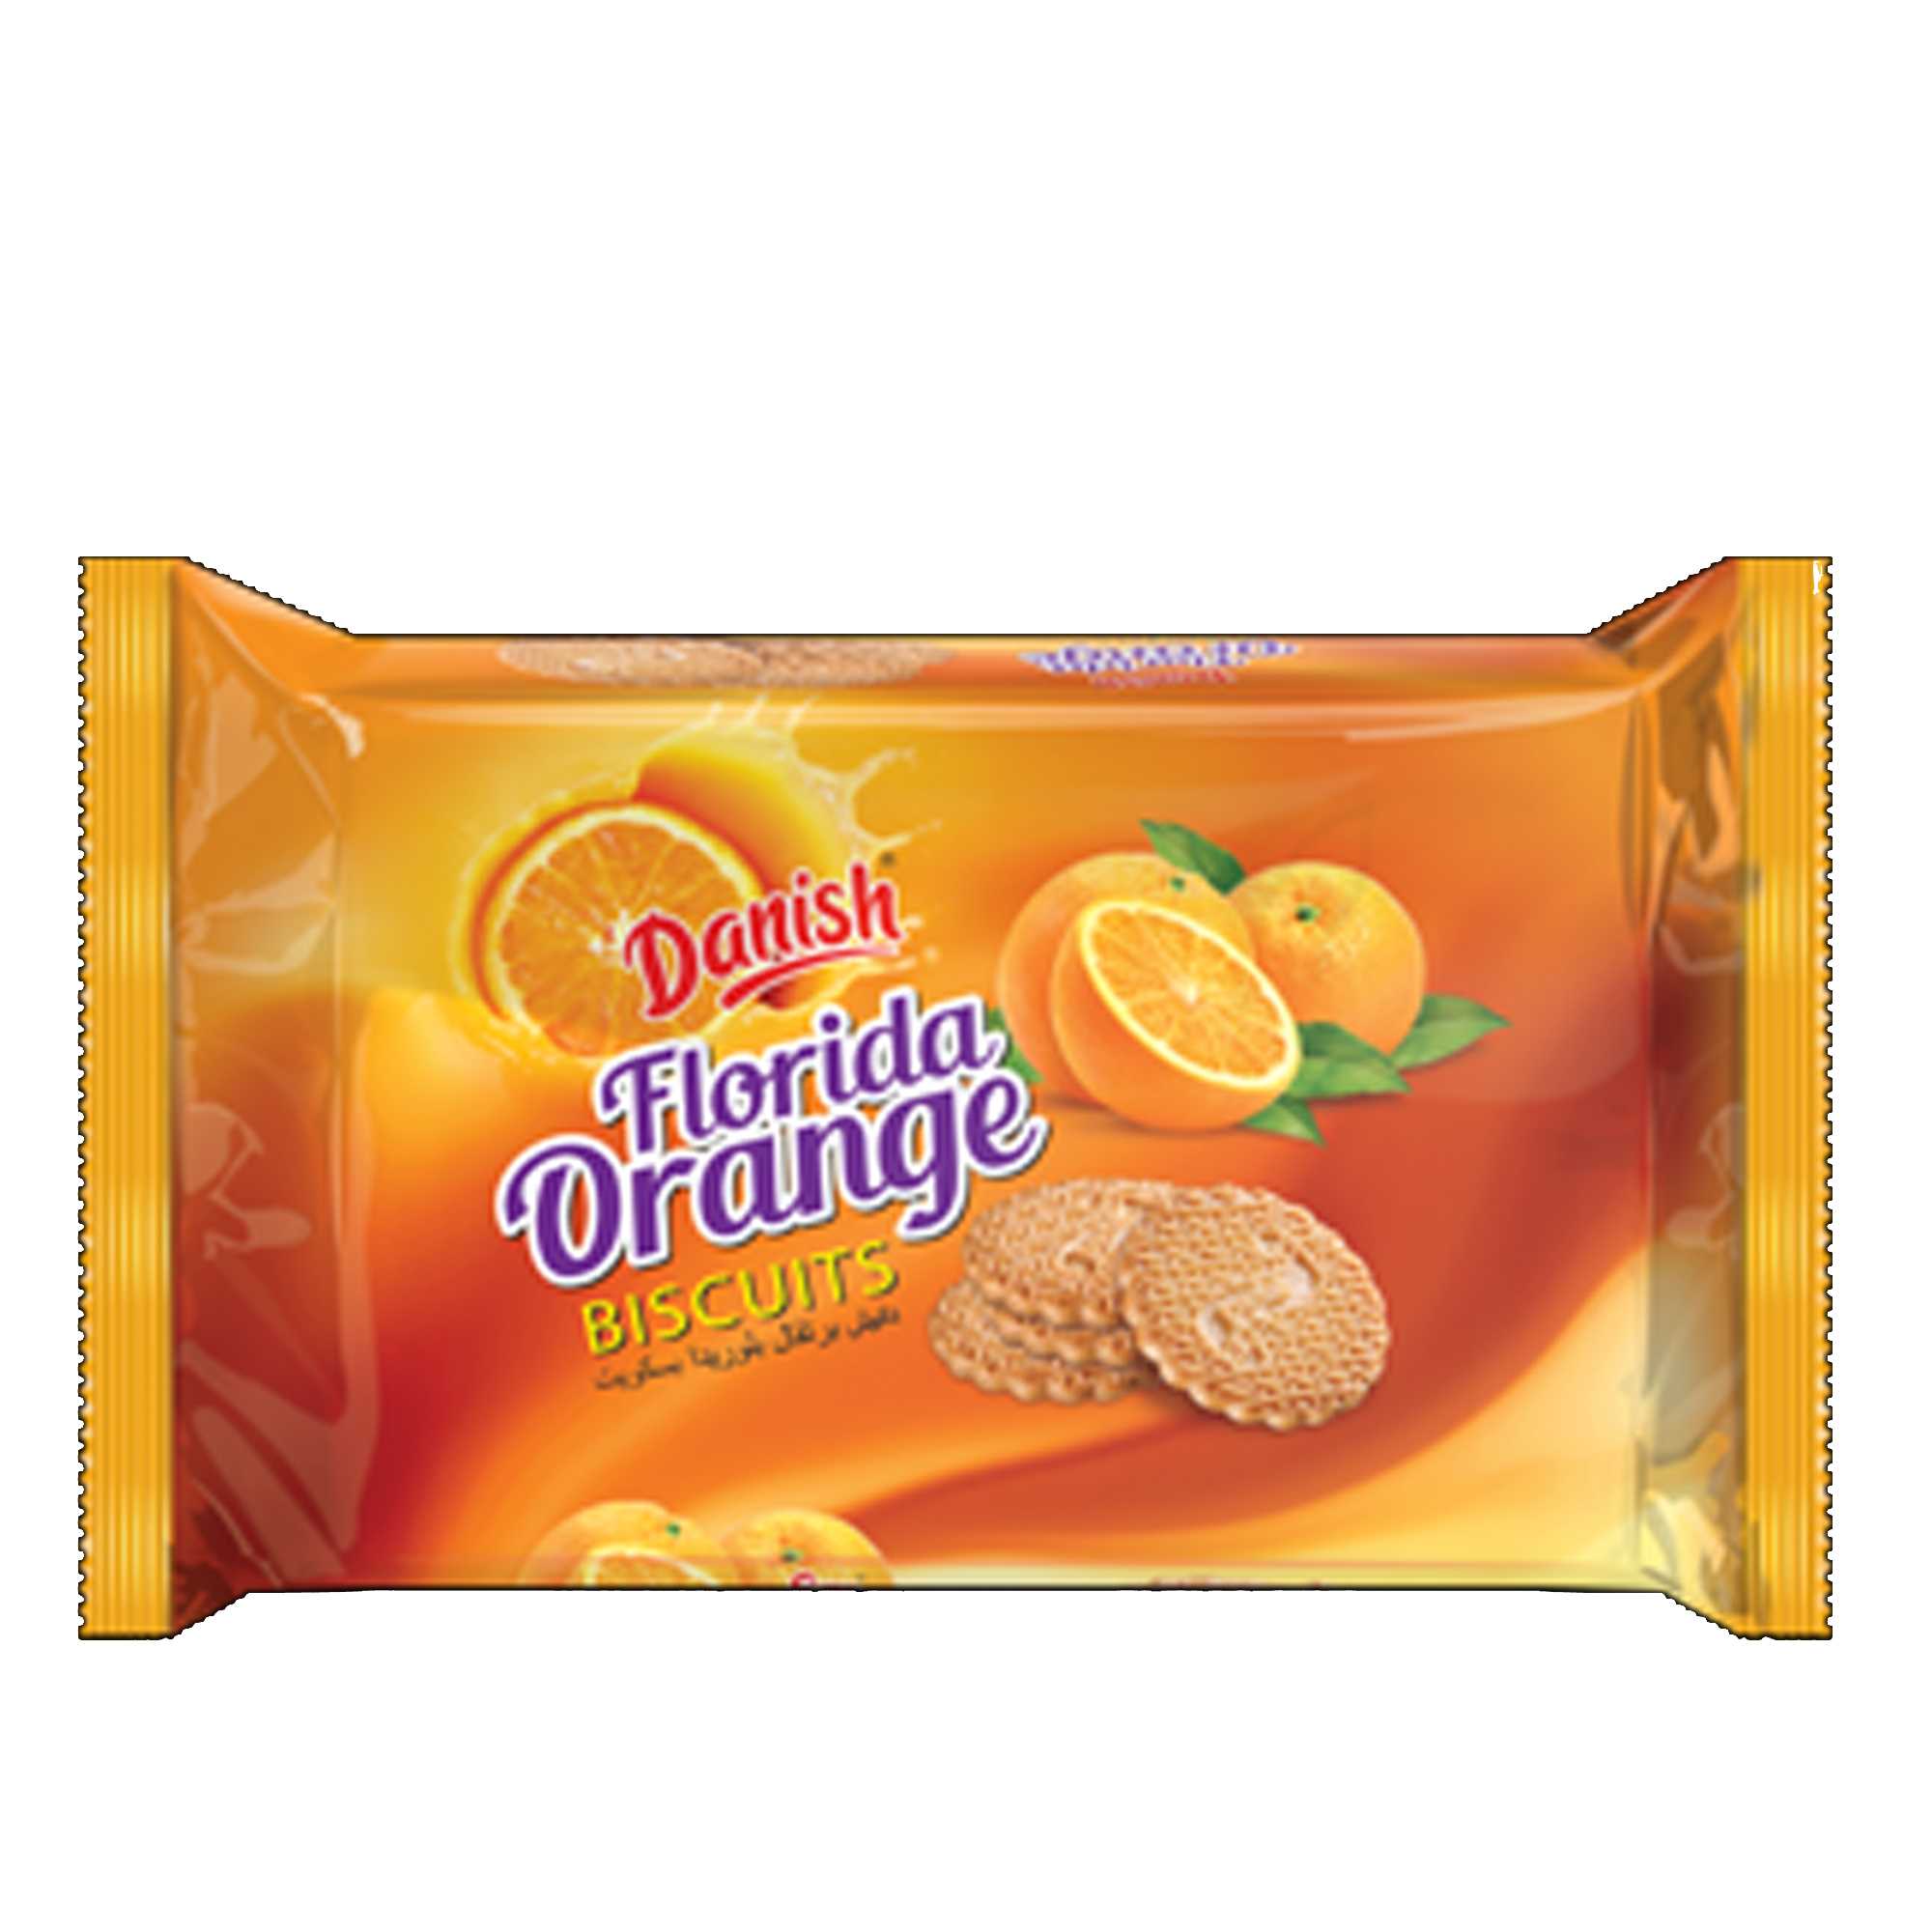 Danish Florida Orange Biscuit 210 gm